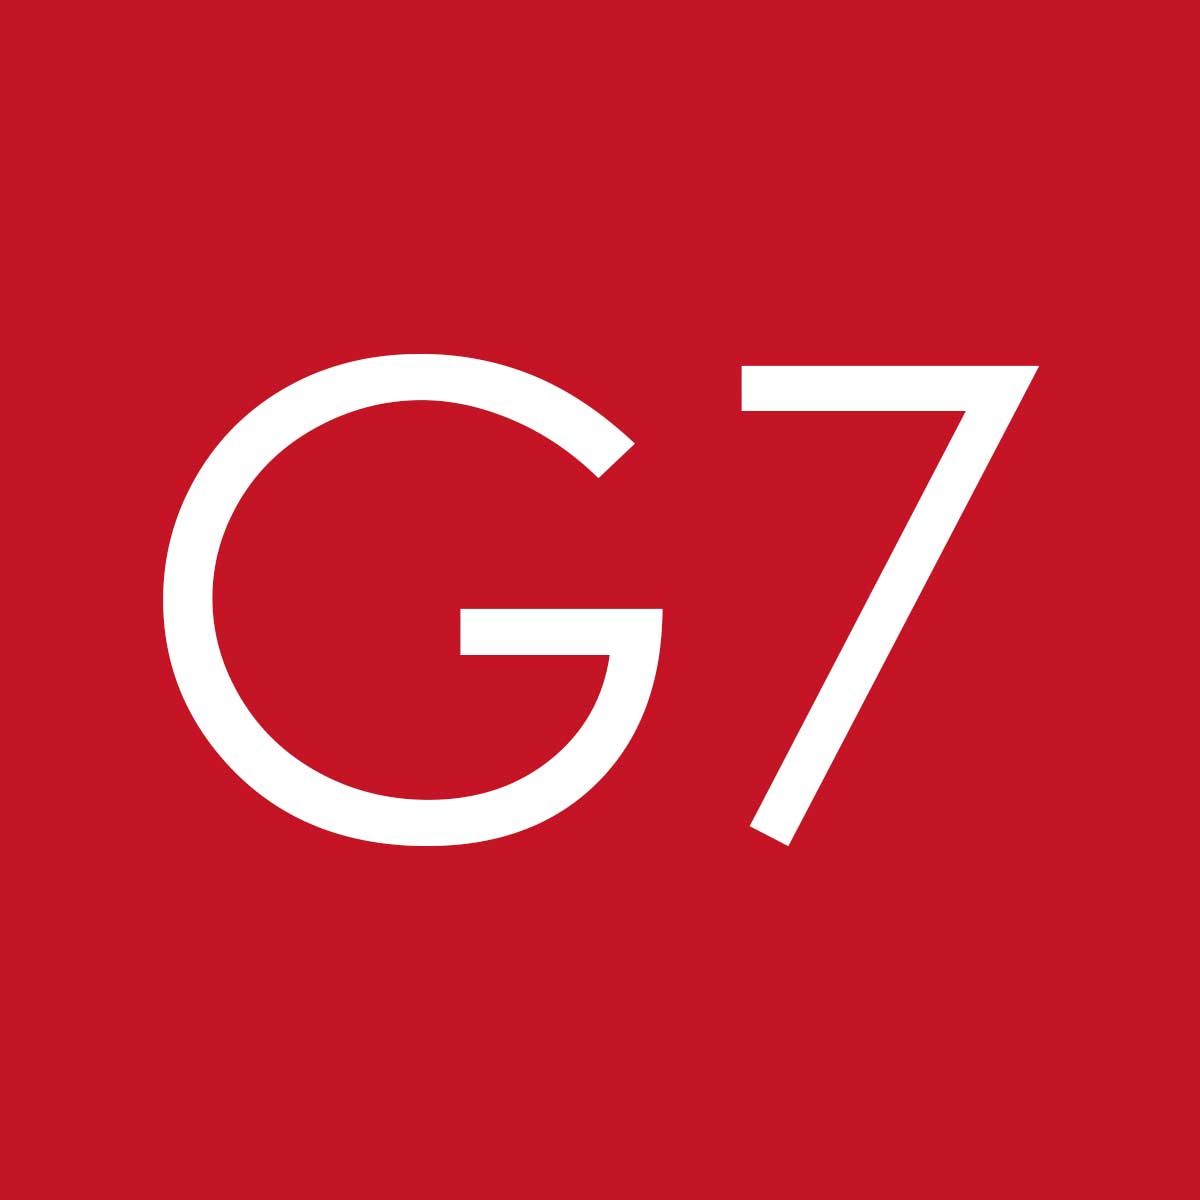 (c) G7website.com